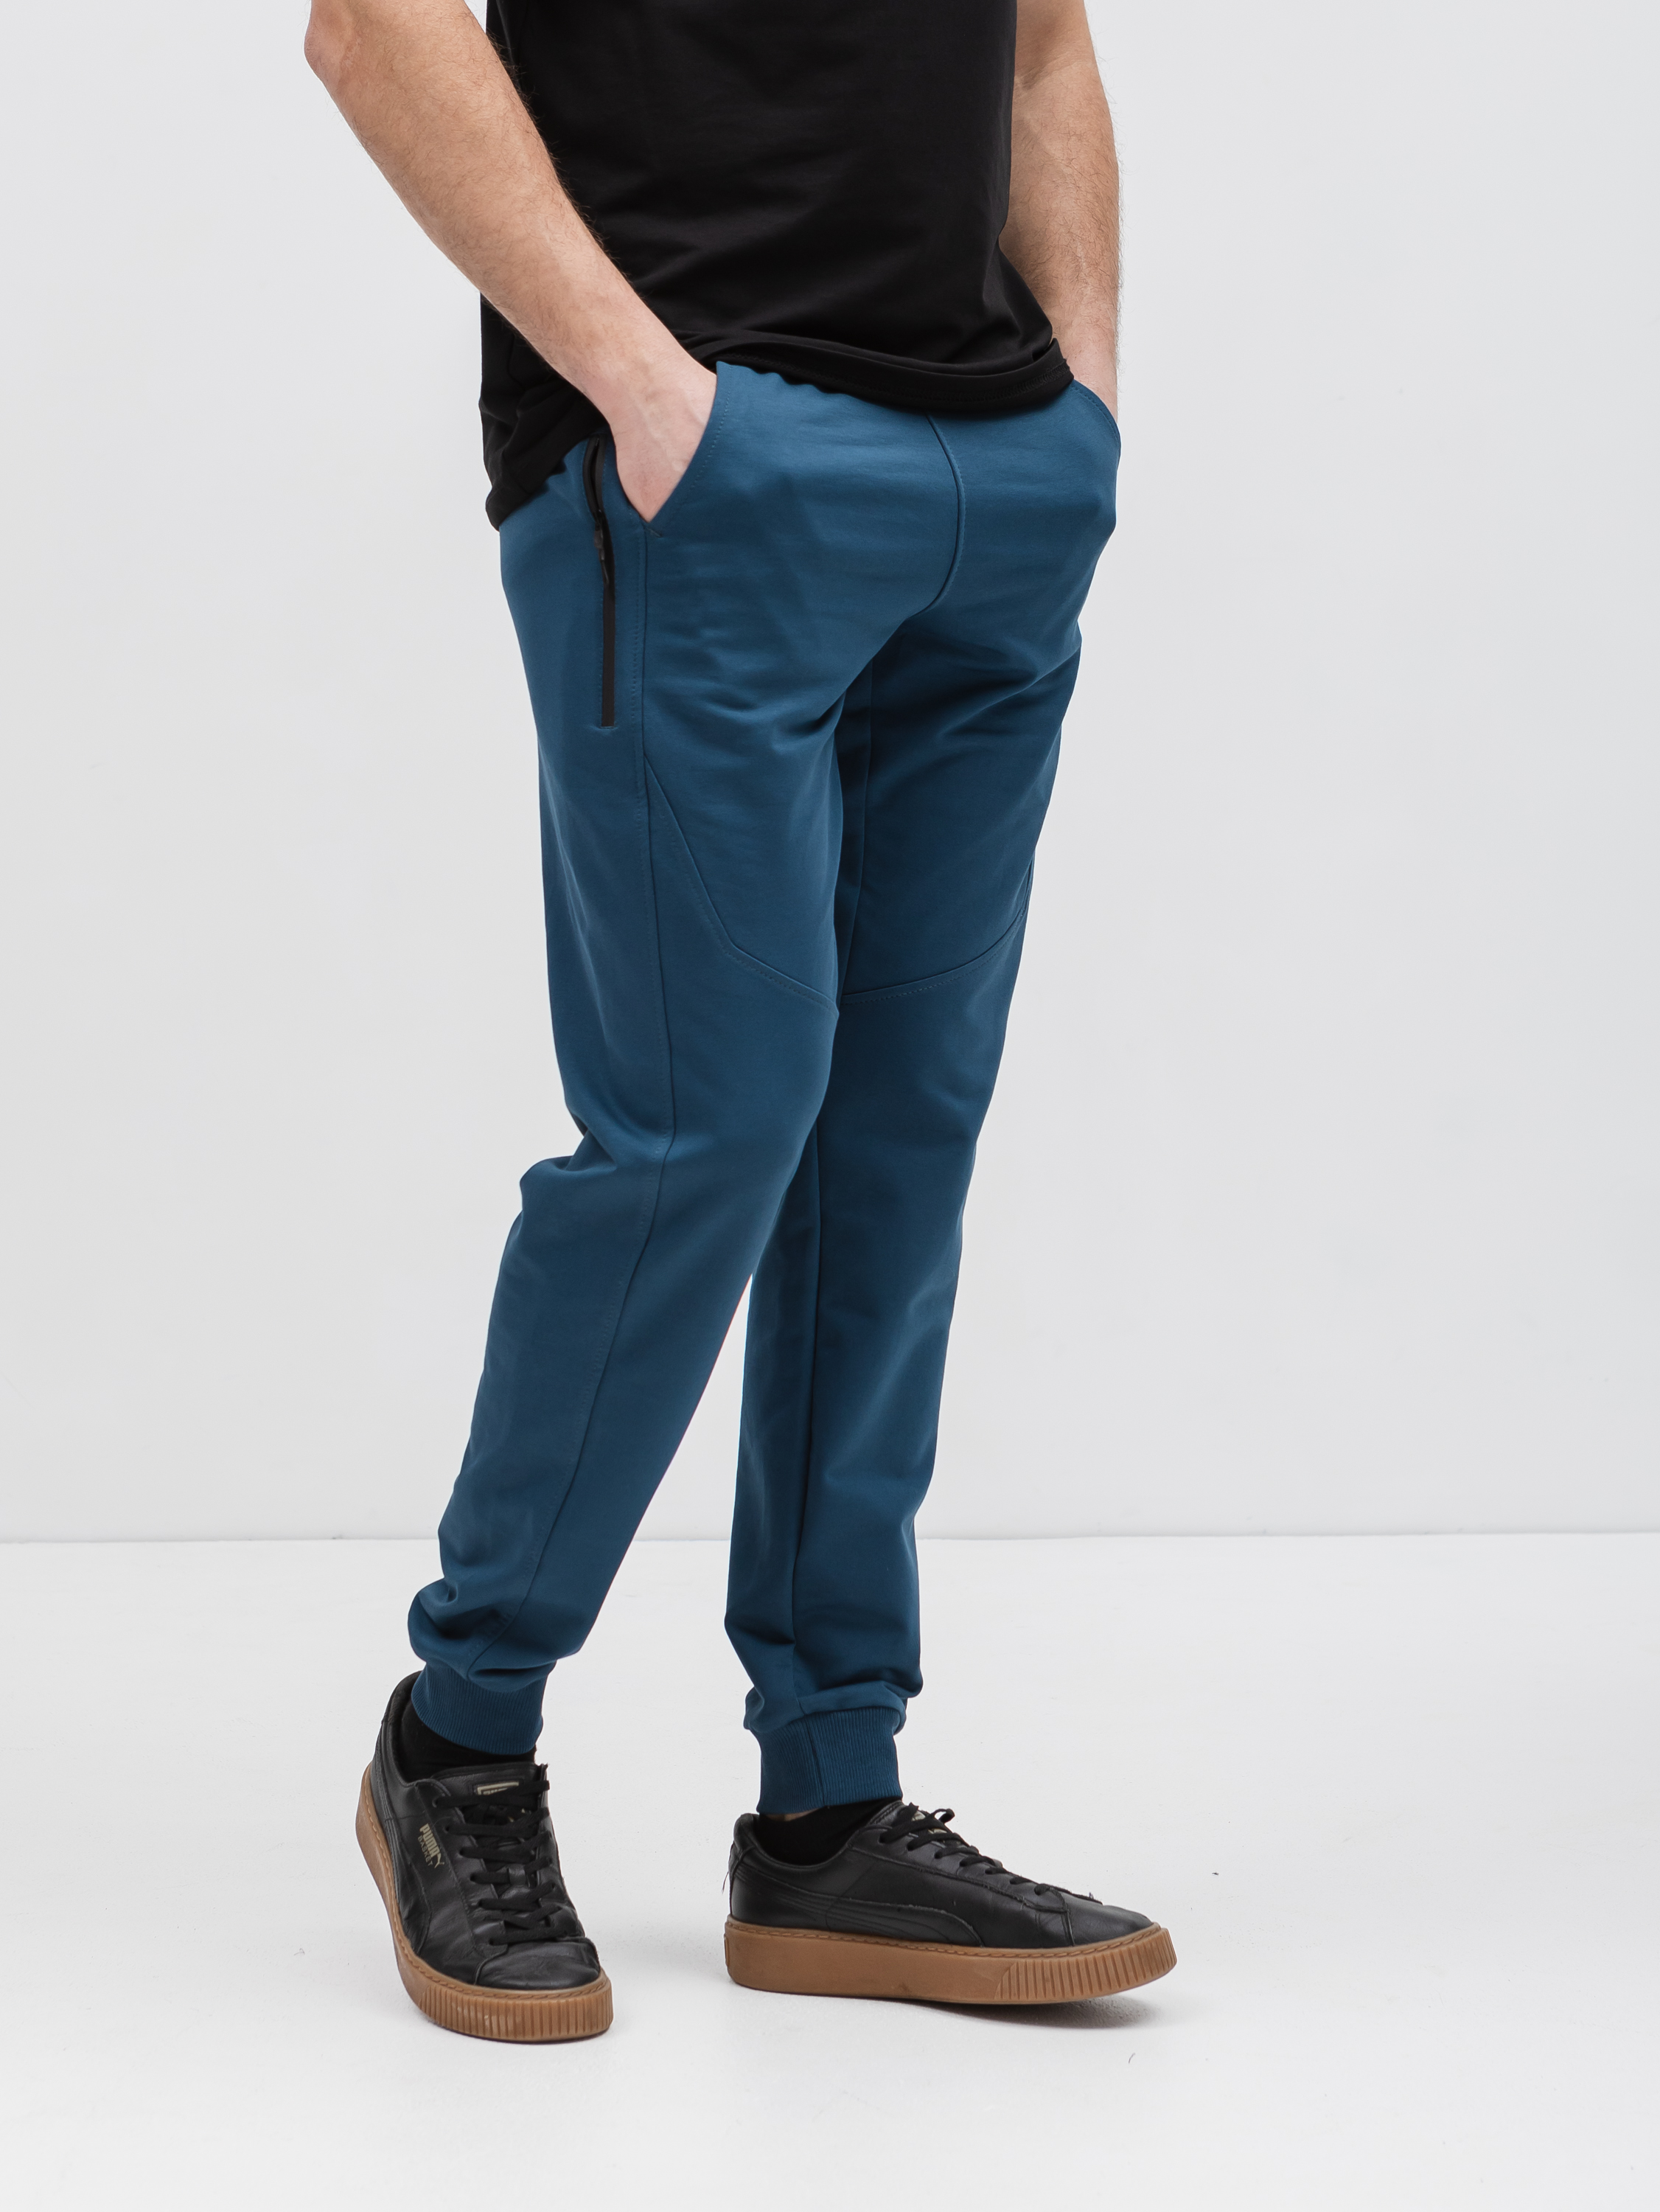 Чоловічі штани з додатковими кишенями Hector 17485